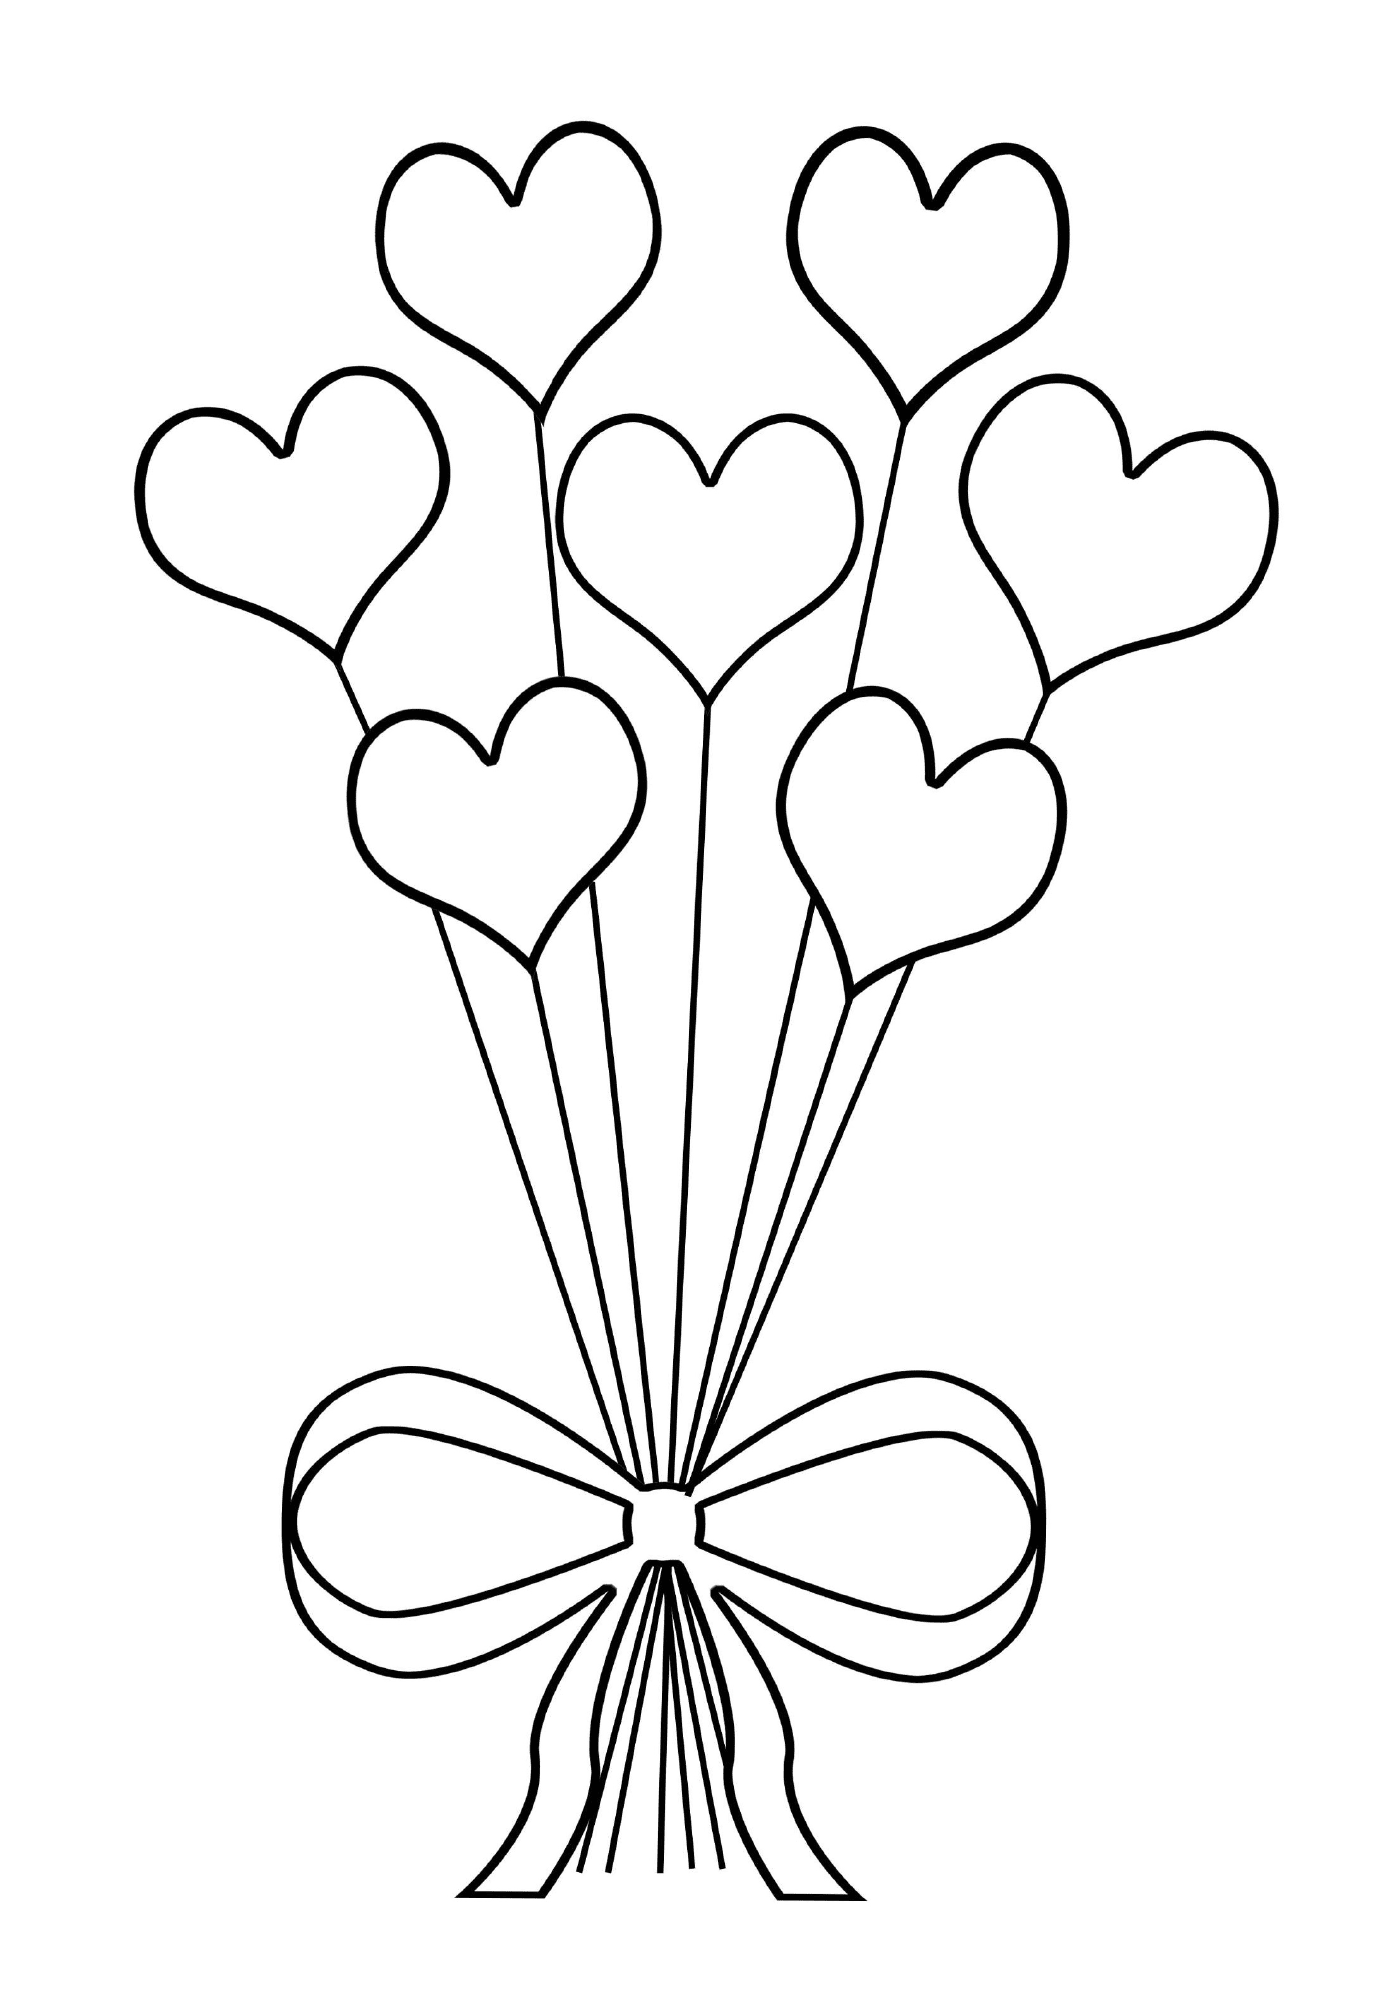  原始的心形花束花束 